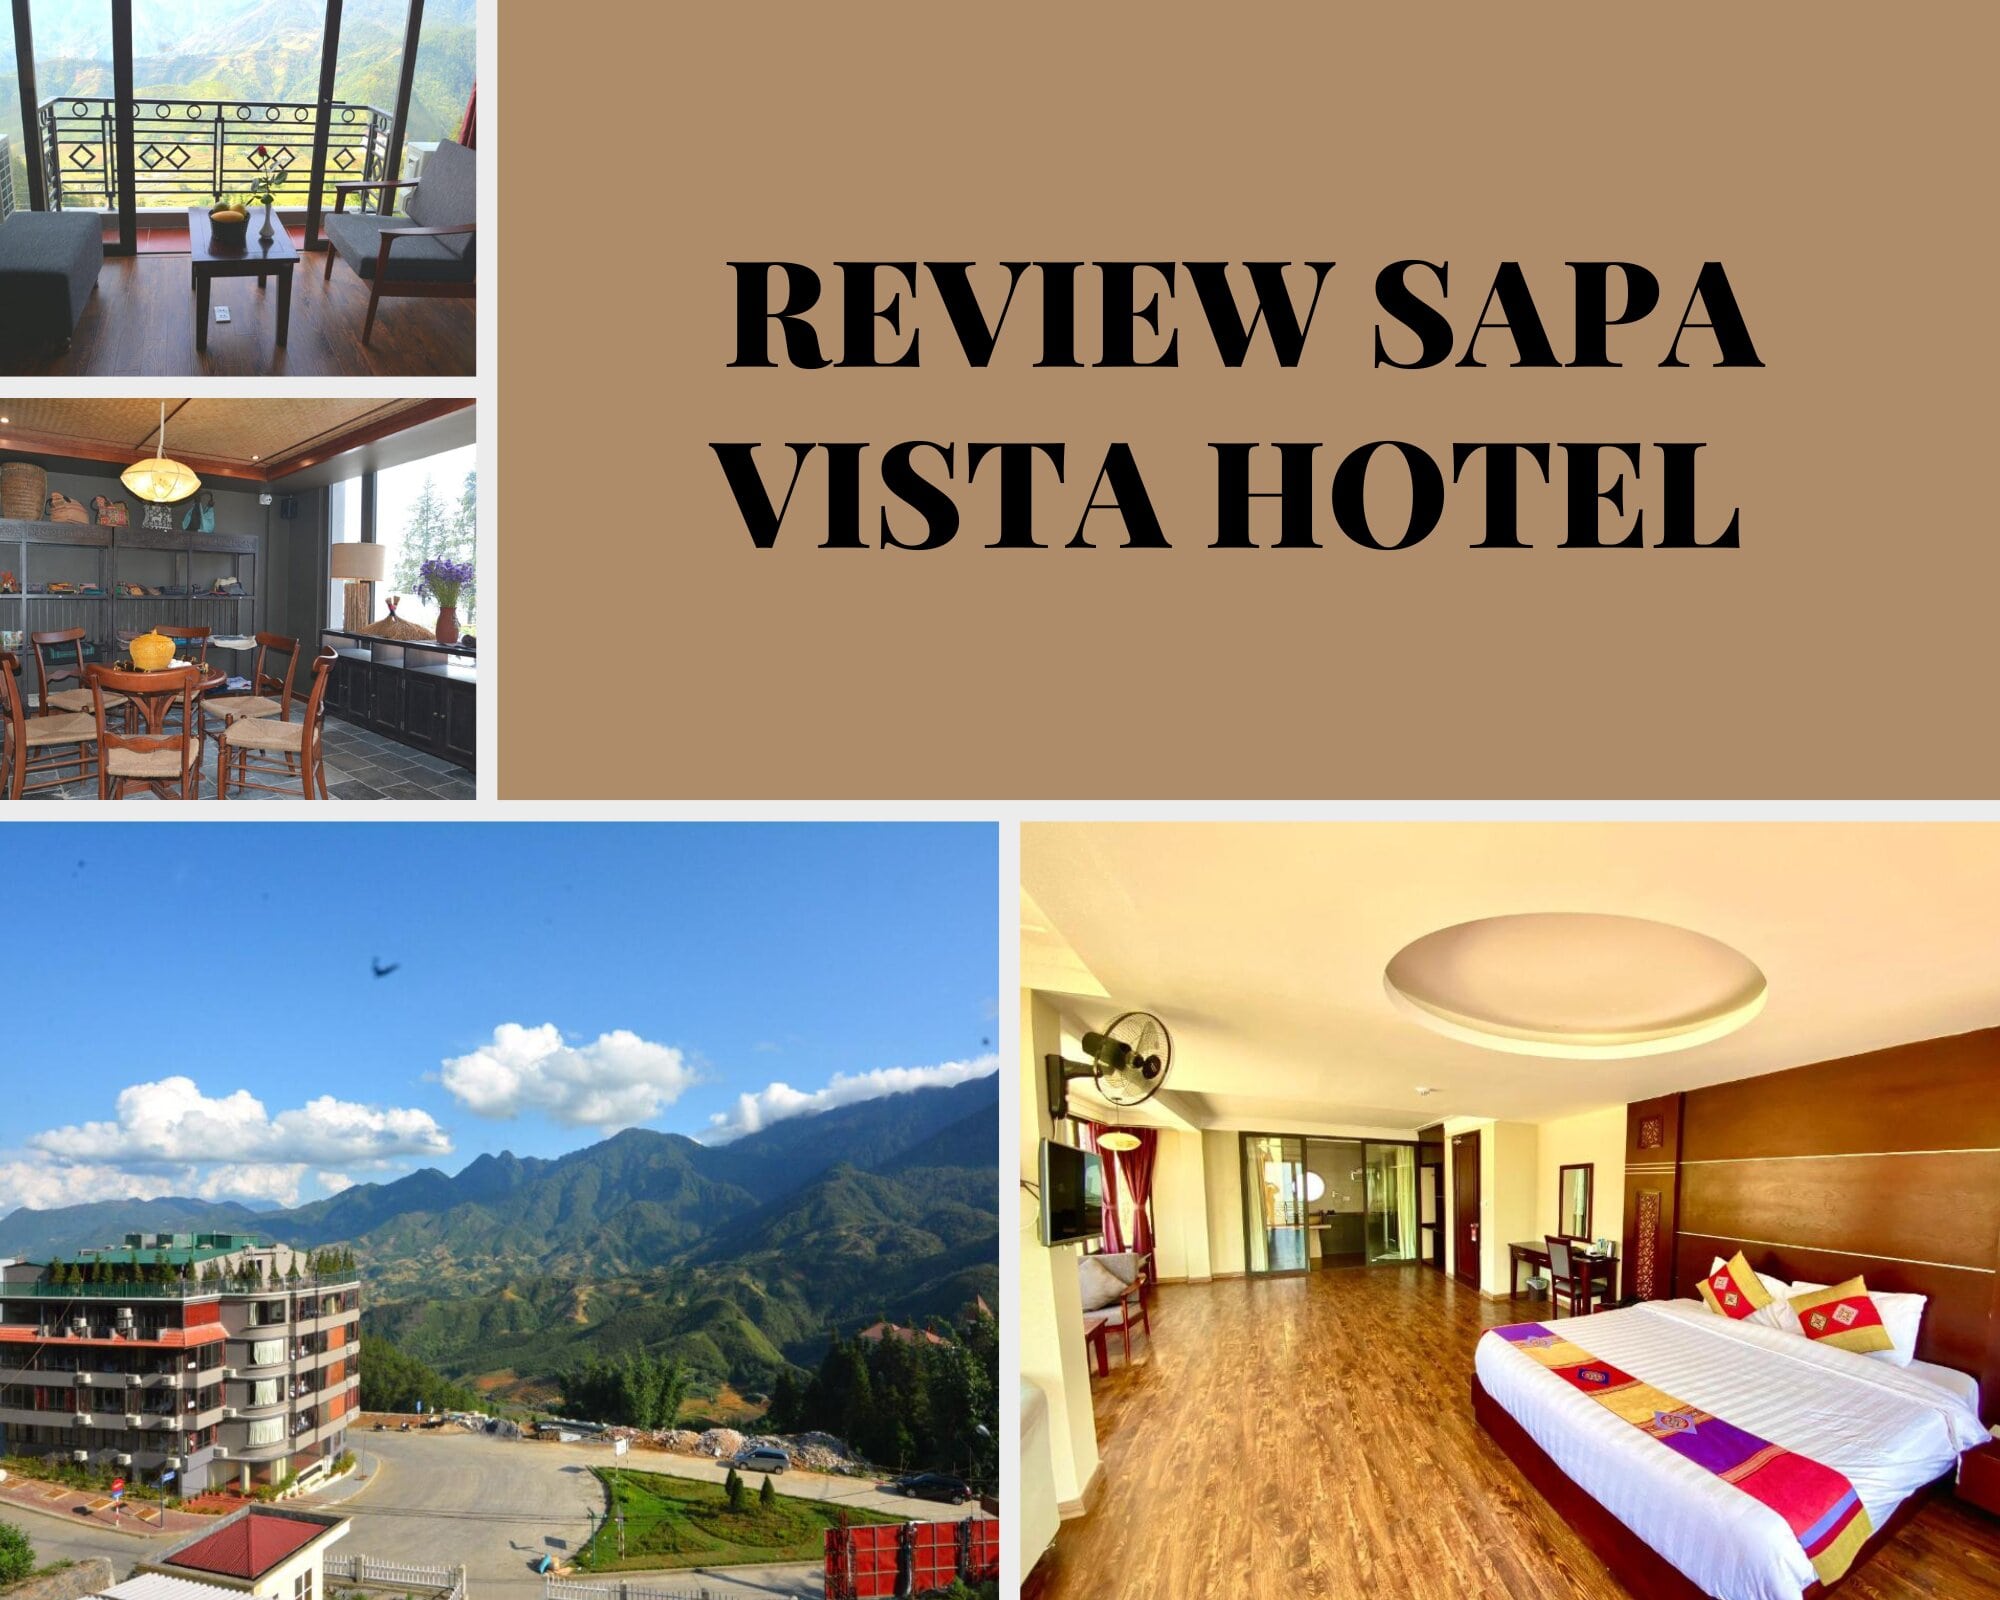 Review Sapa Vista Hotel - Vẻ đẹp sang trọng giữa núi rừng Tây Bắc